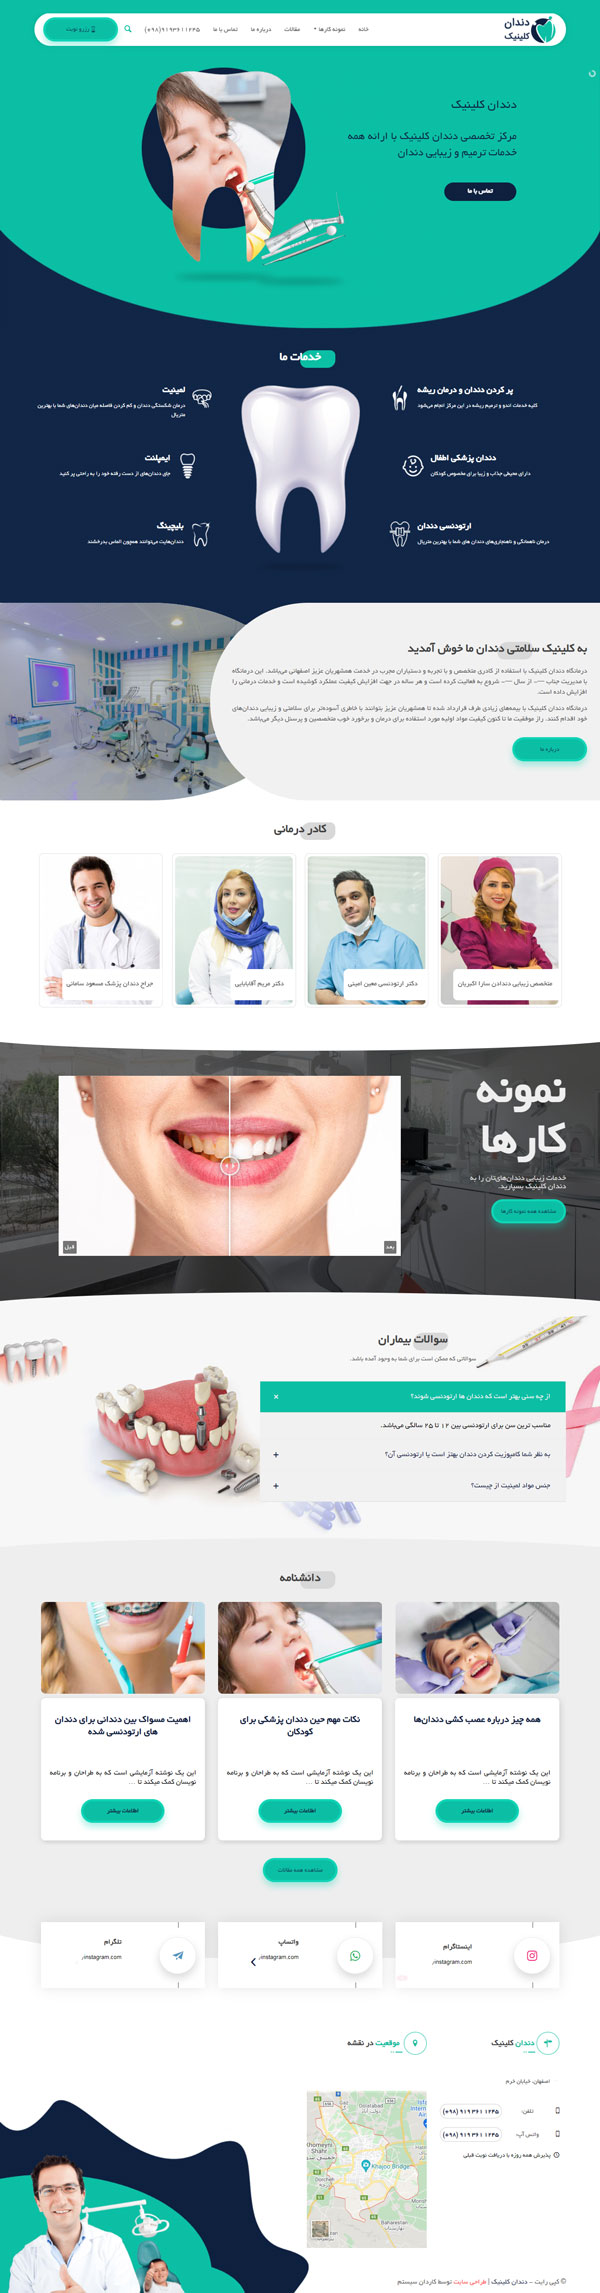 طراحی سایت دندان کلینیک | کلینیک دندانپزشکی